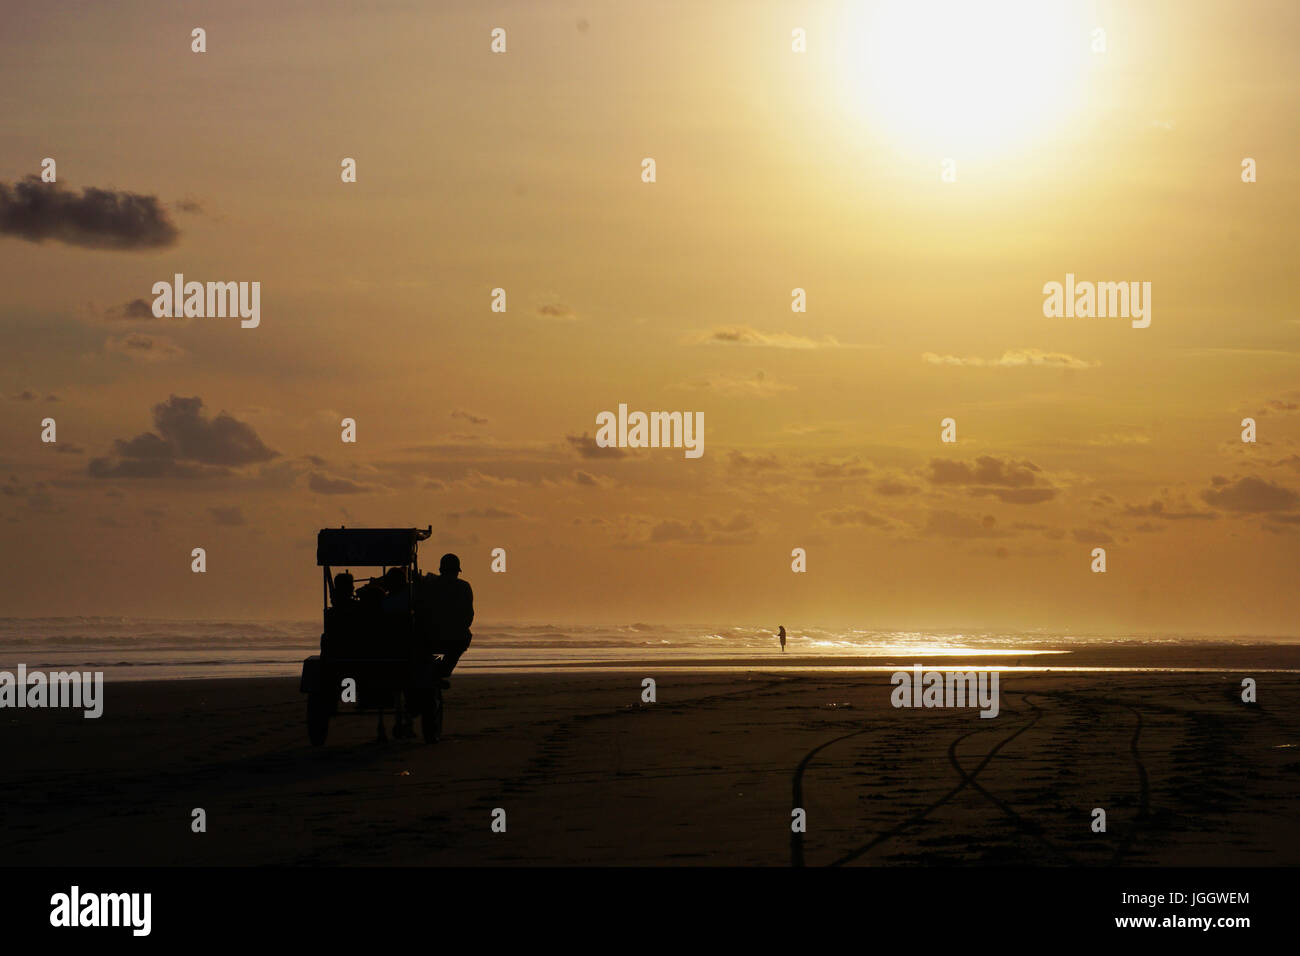 Certains sont de tourisme équestre 'Andong' dans la plage de Parangtritis, Bantul, Yogyakarta. Banque D'Images